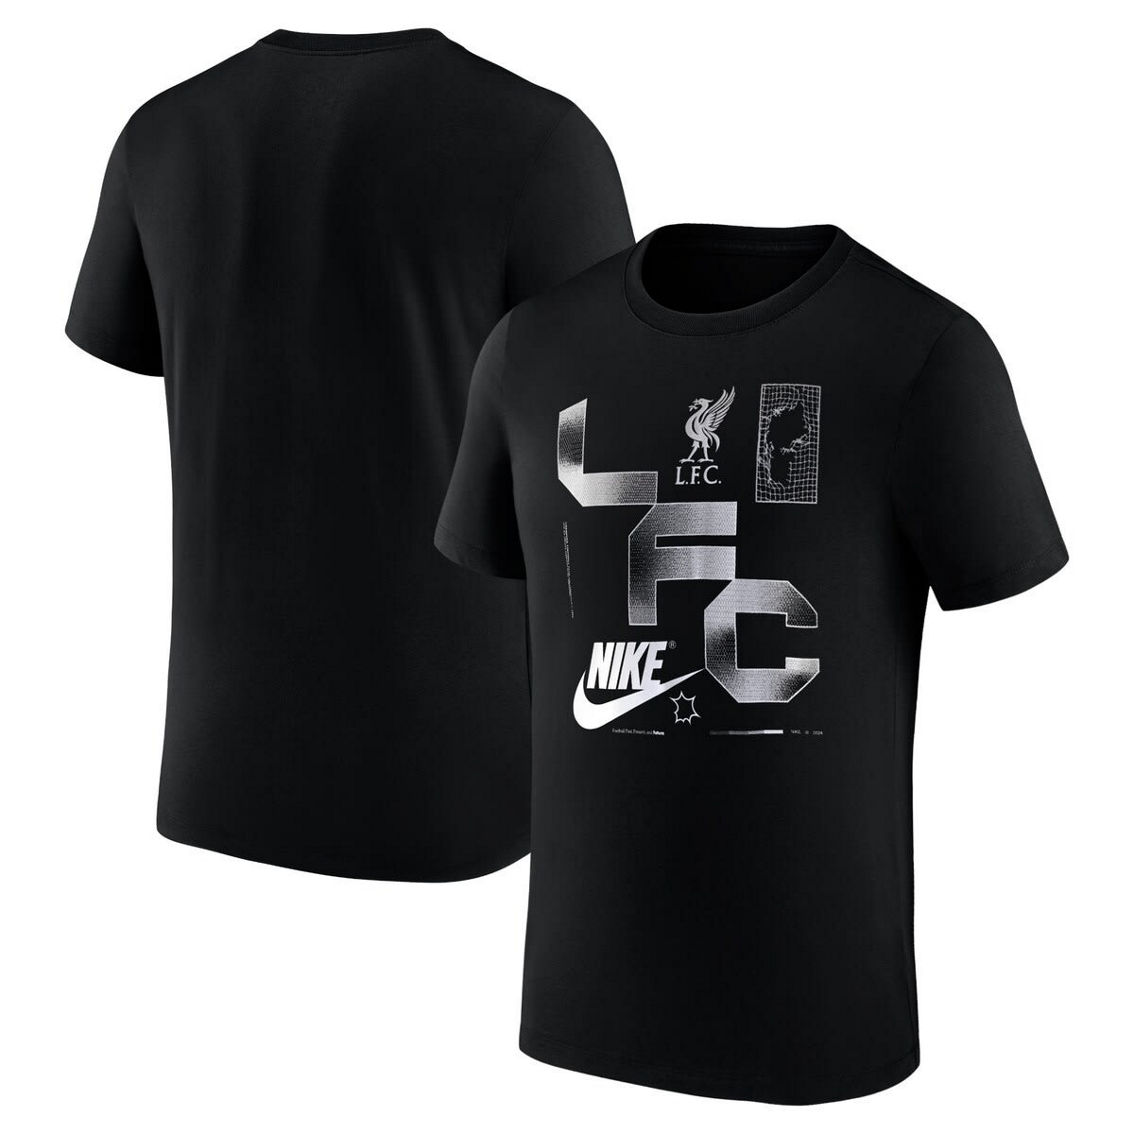 Nike Men's Black Liverpool Futura T-Shirt - Image 2 of 4